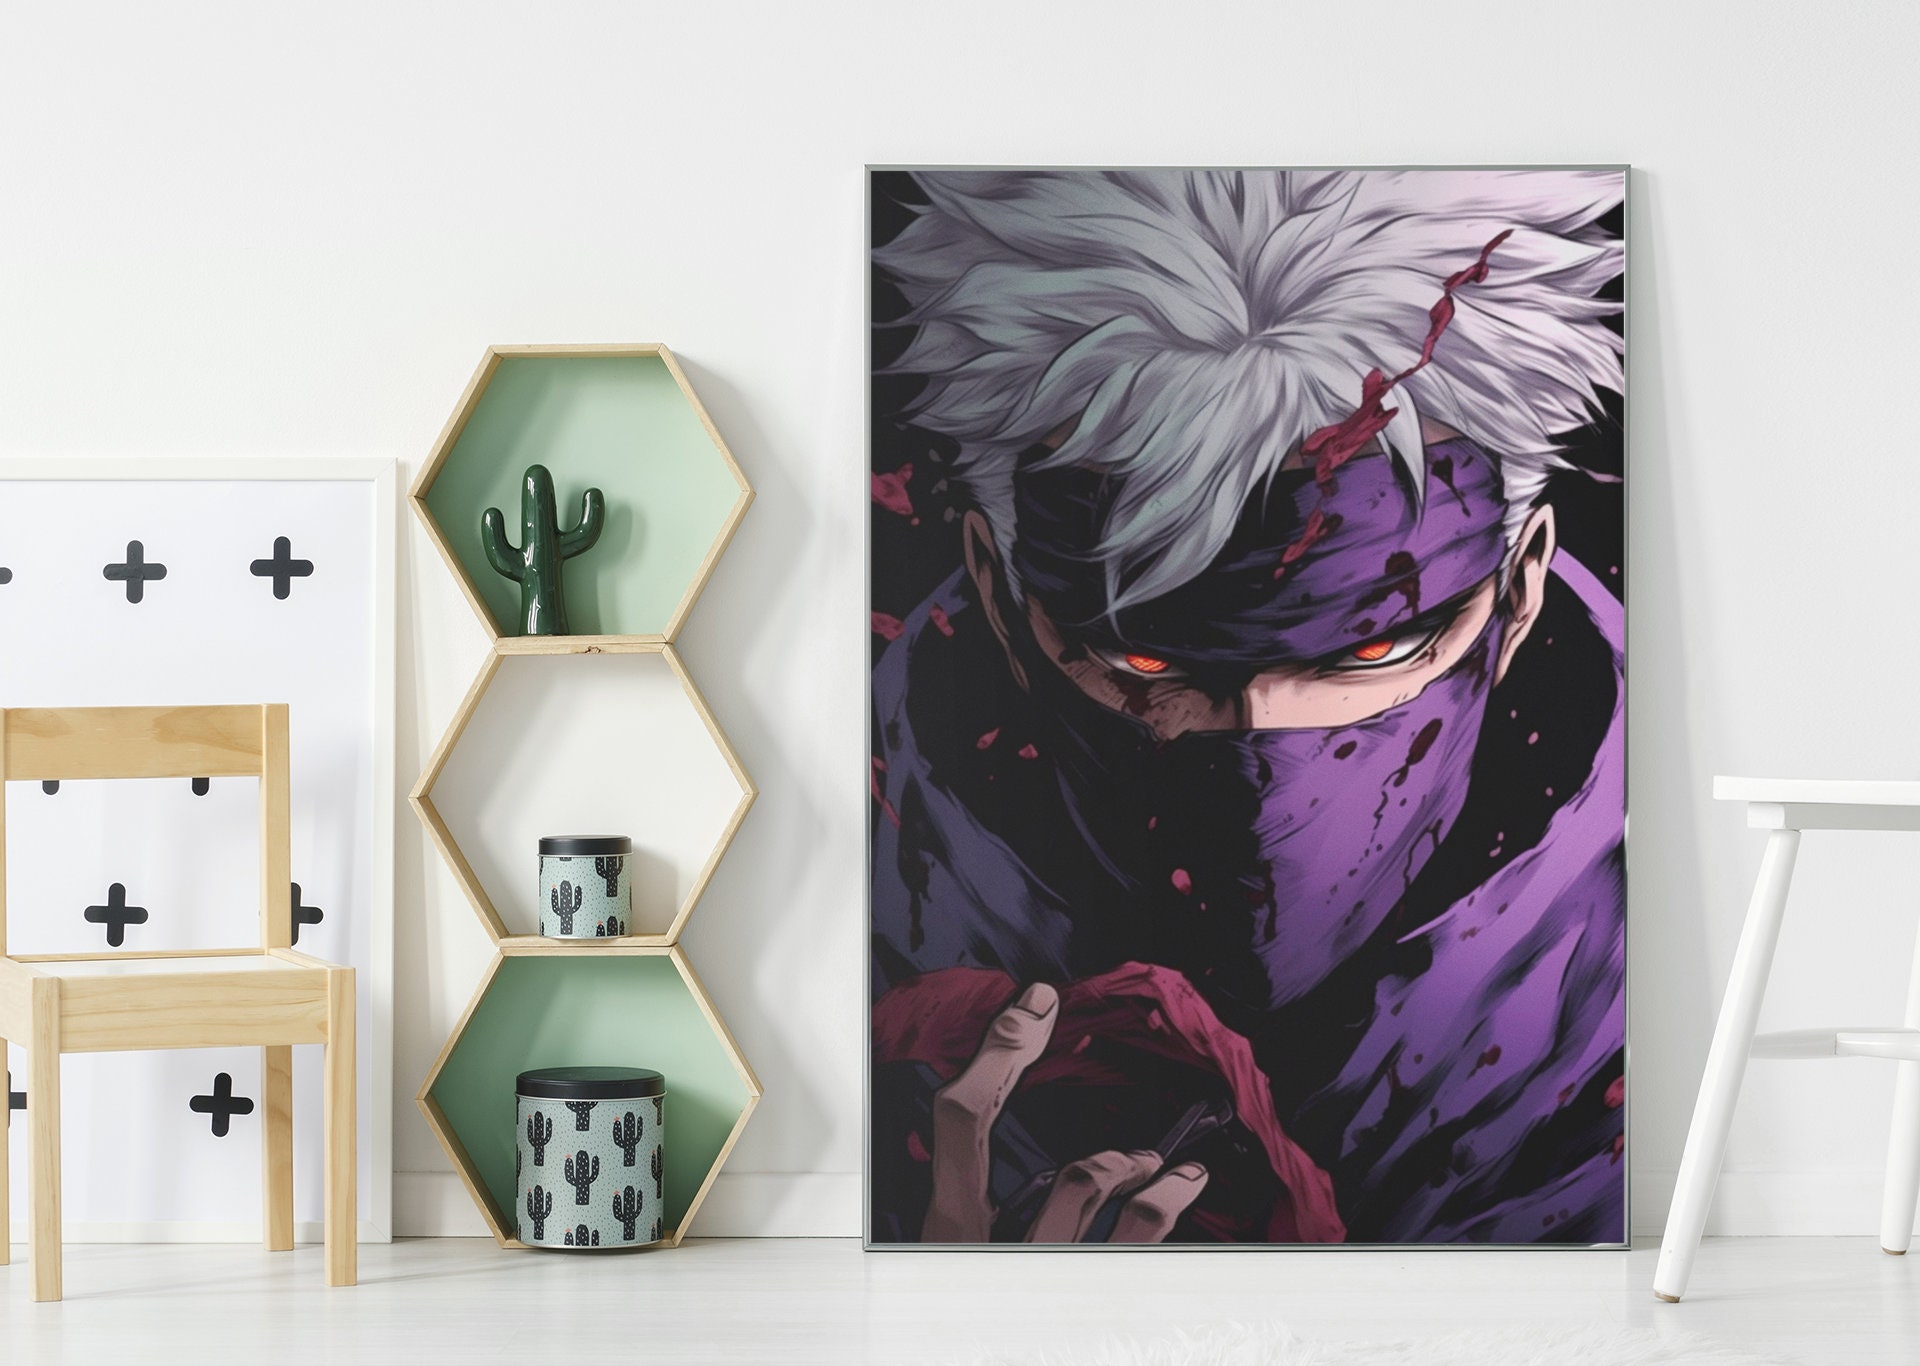 Anime Naruto Poster Kakashi Canvas Painting